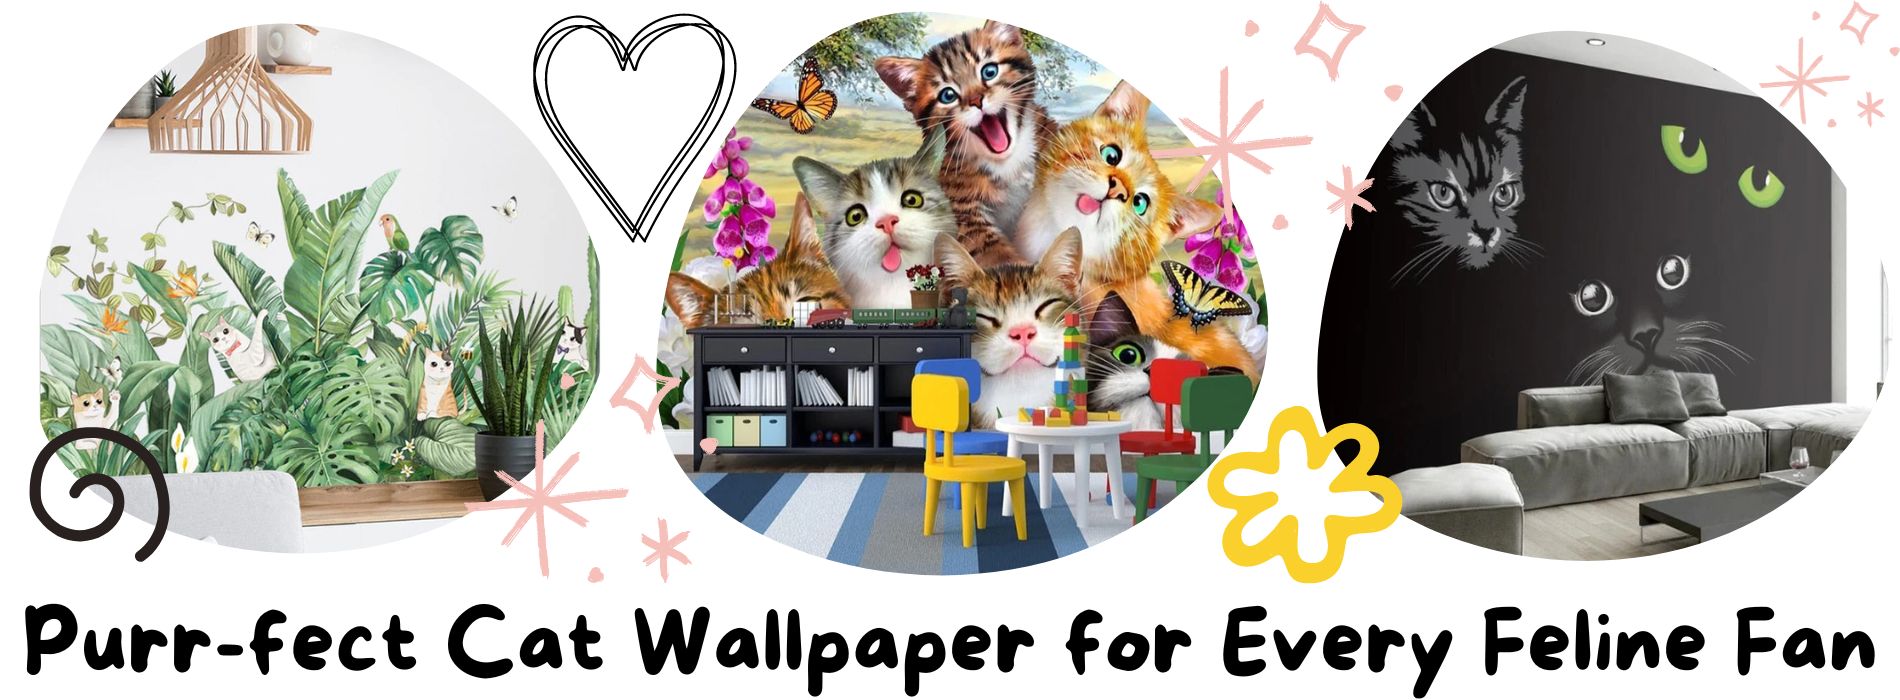 cat-wallpaper